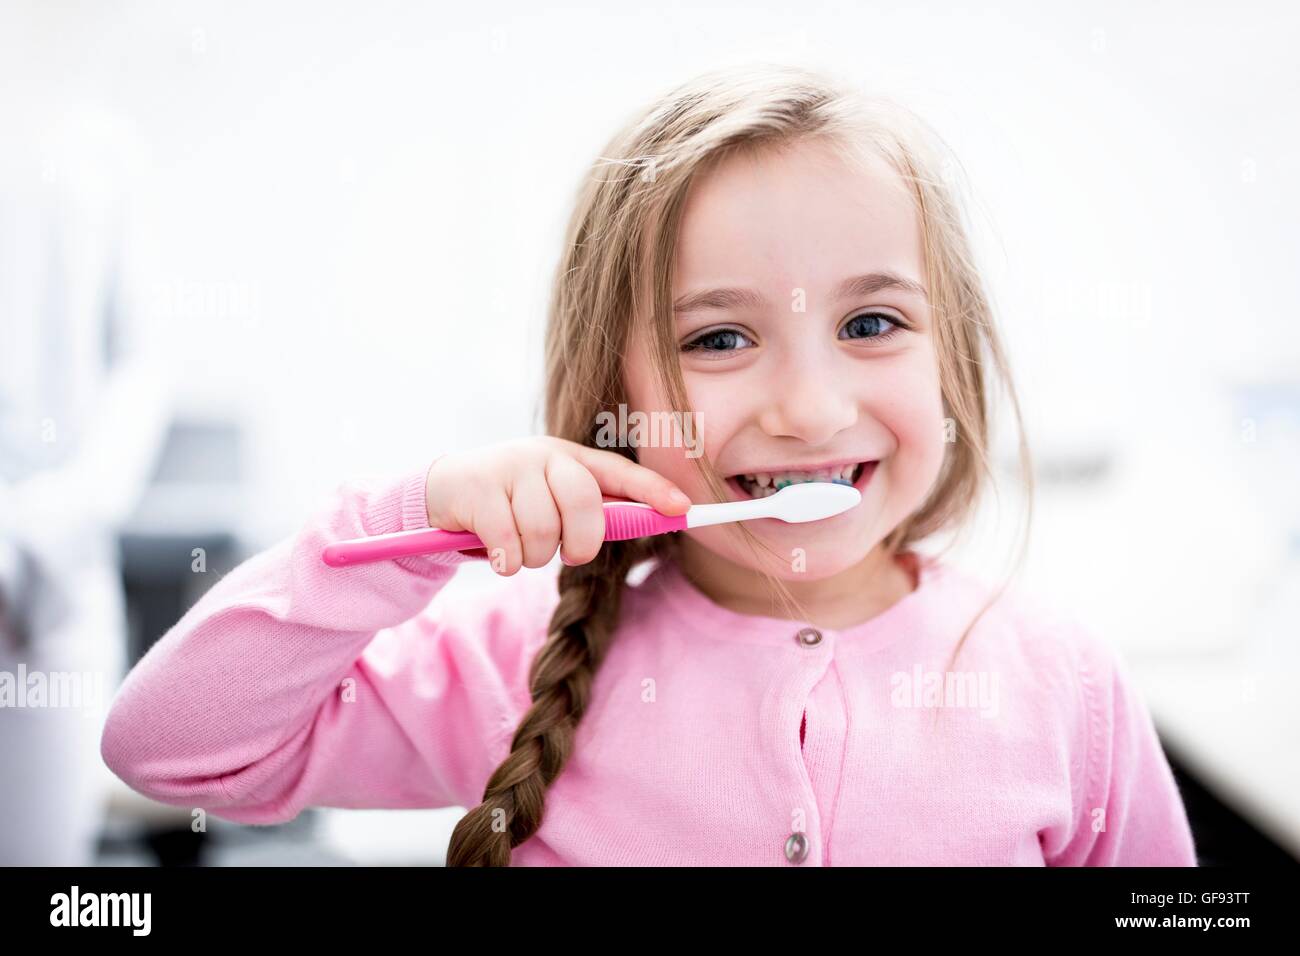 Parution du modèle. Jeune fille se brosser les dents, portrait, close-up. Banque D'Images